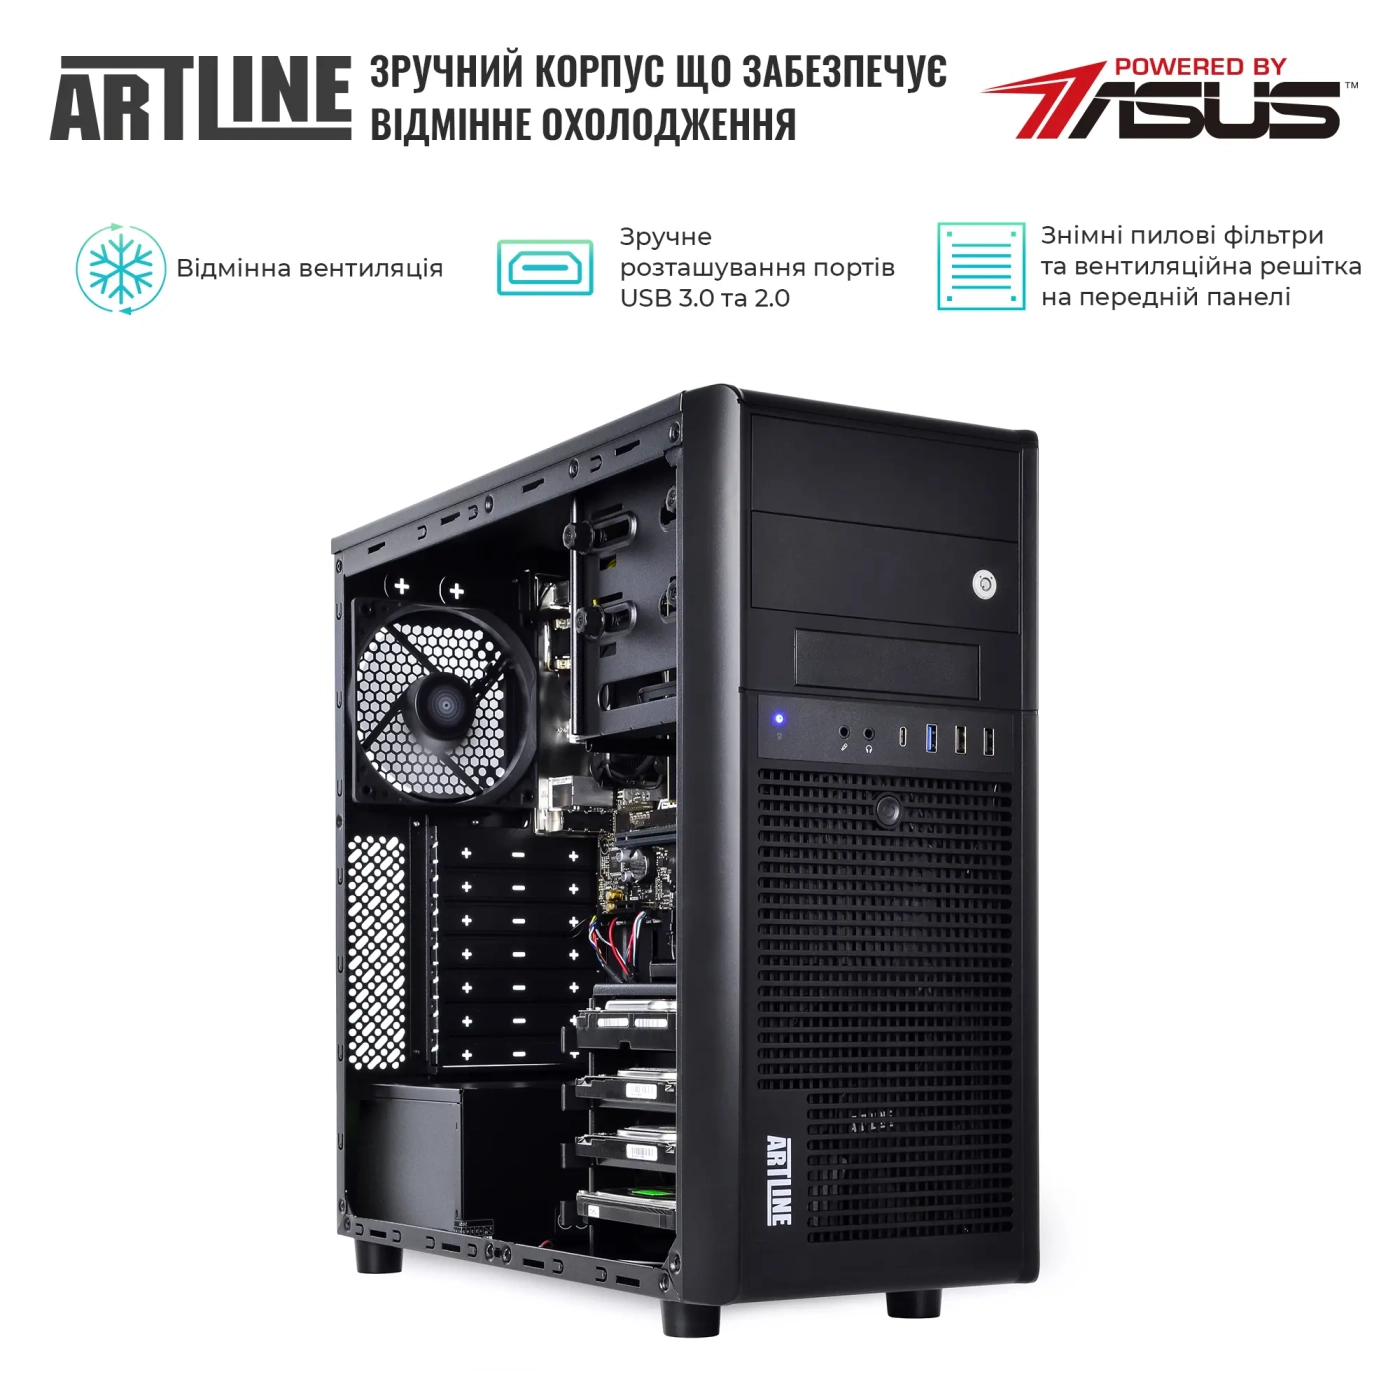 Купить Сервер ARTLINE Business T37 (T37v38) - фото 3